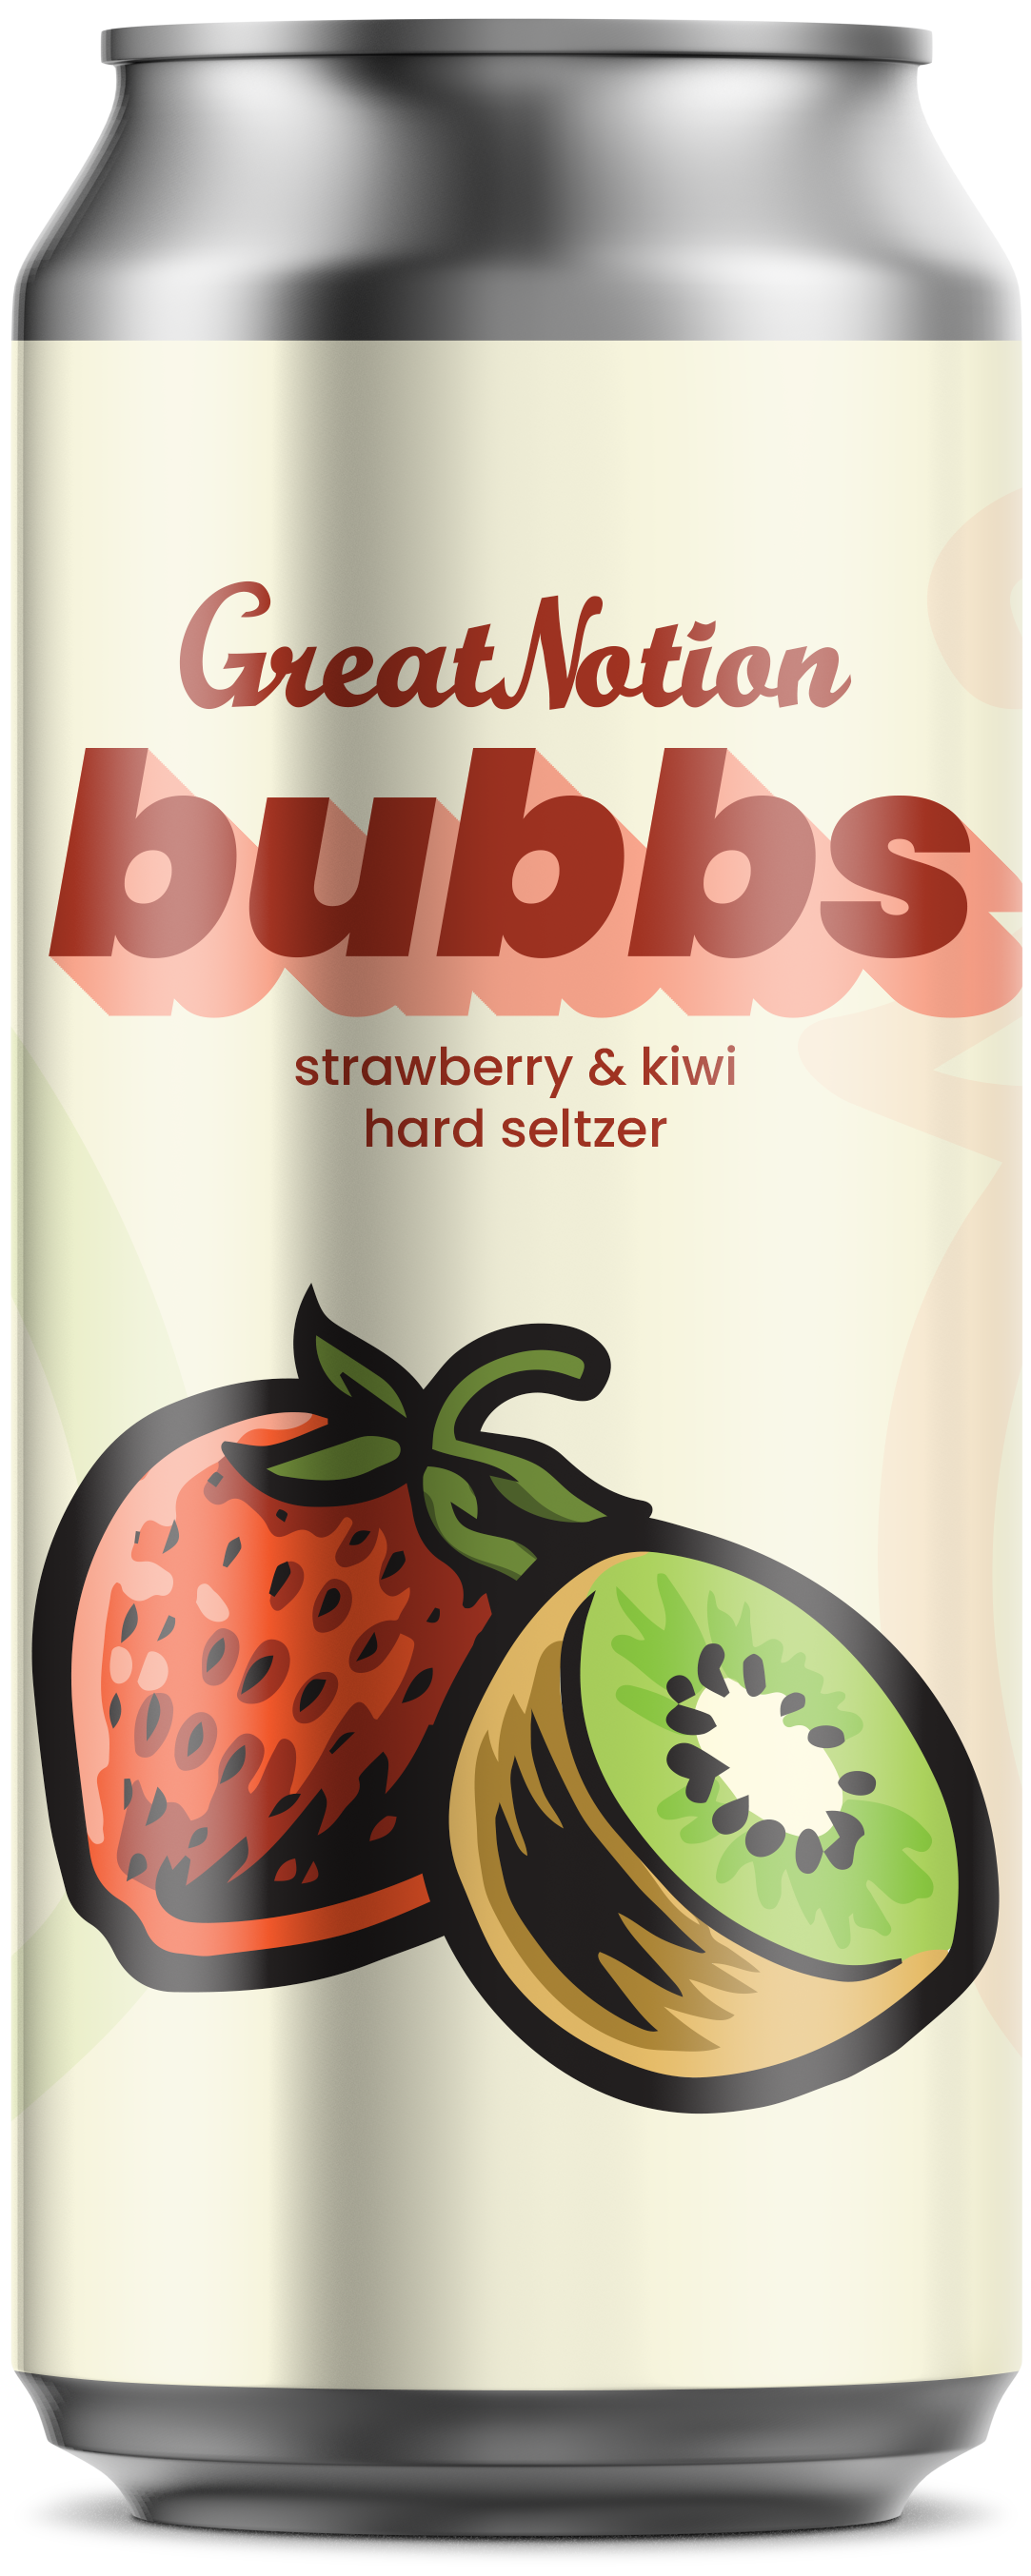 Bubbs (Strawberry Kiwi)